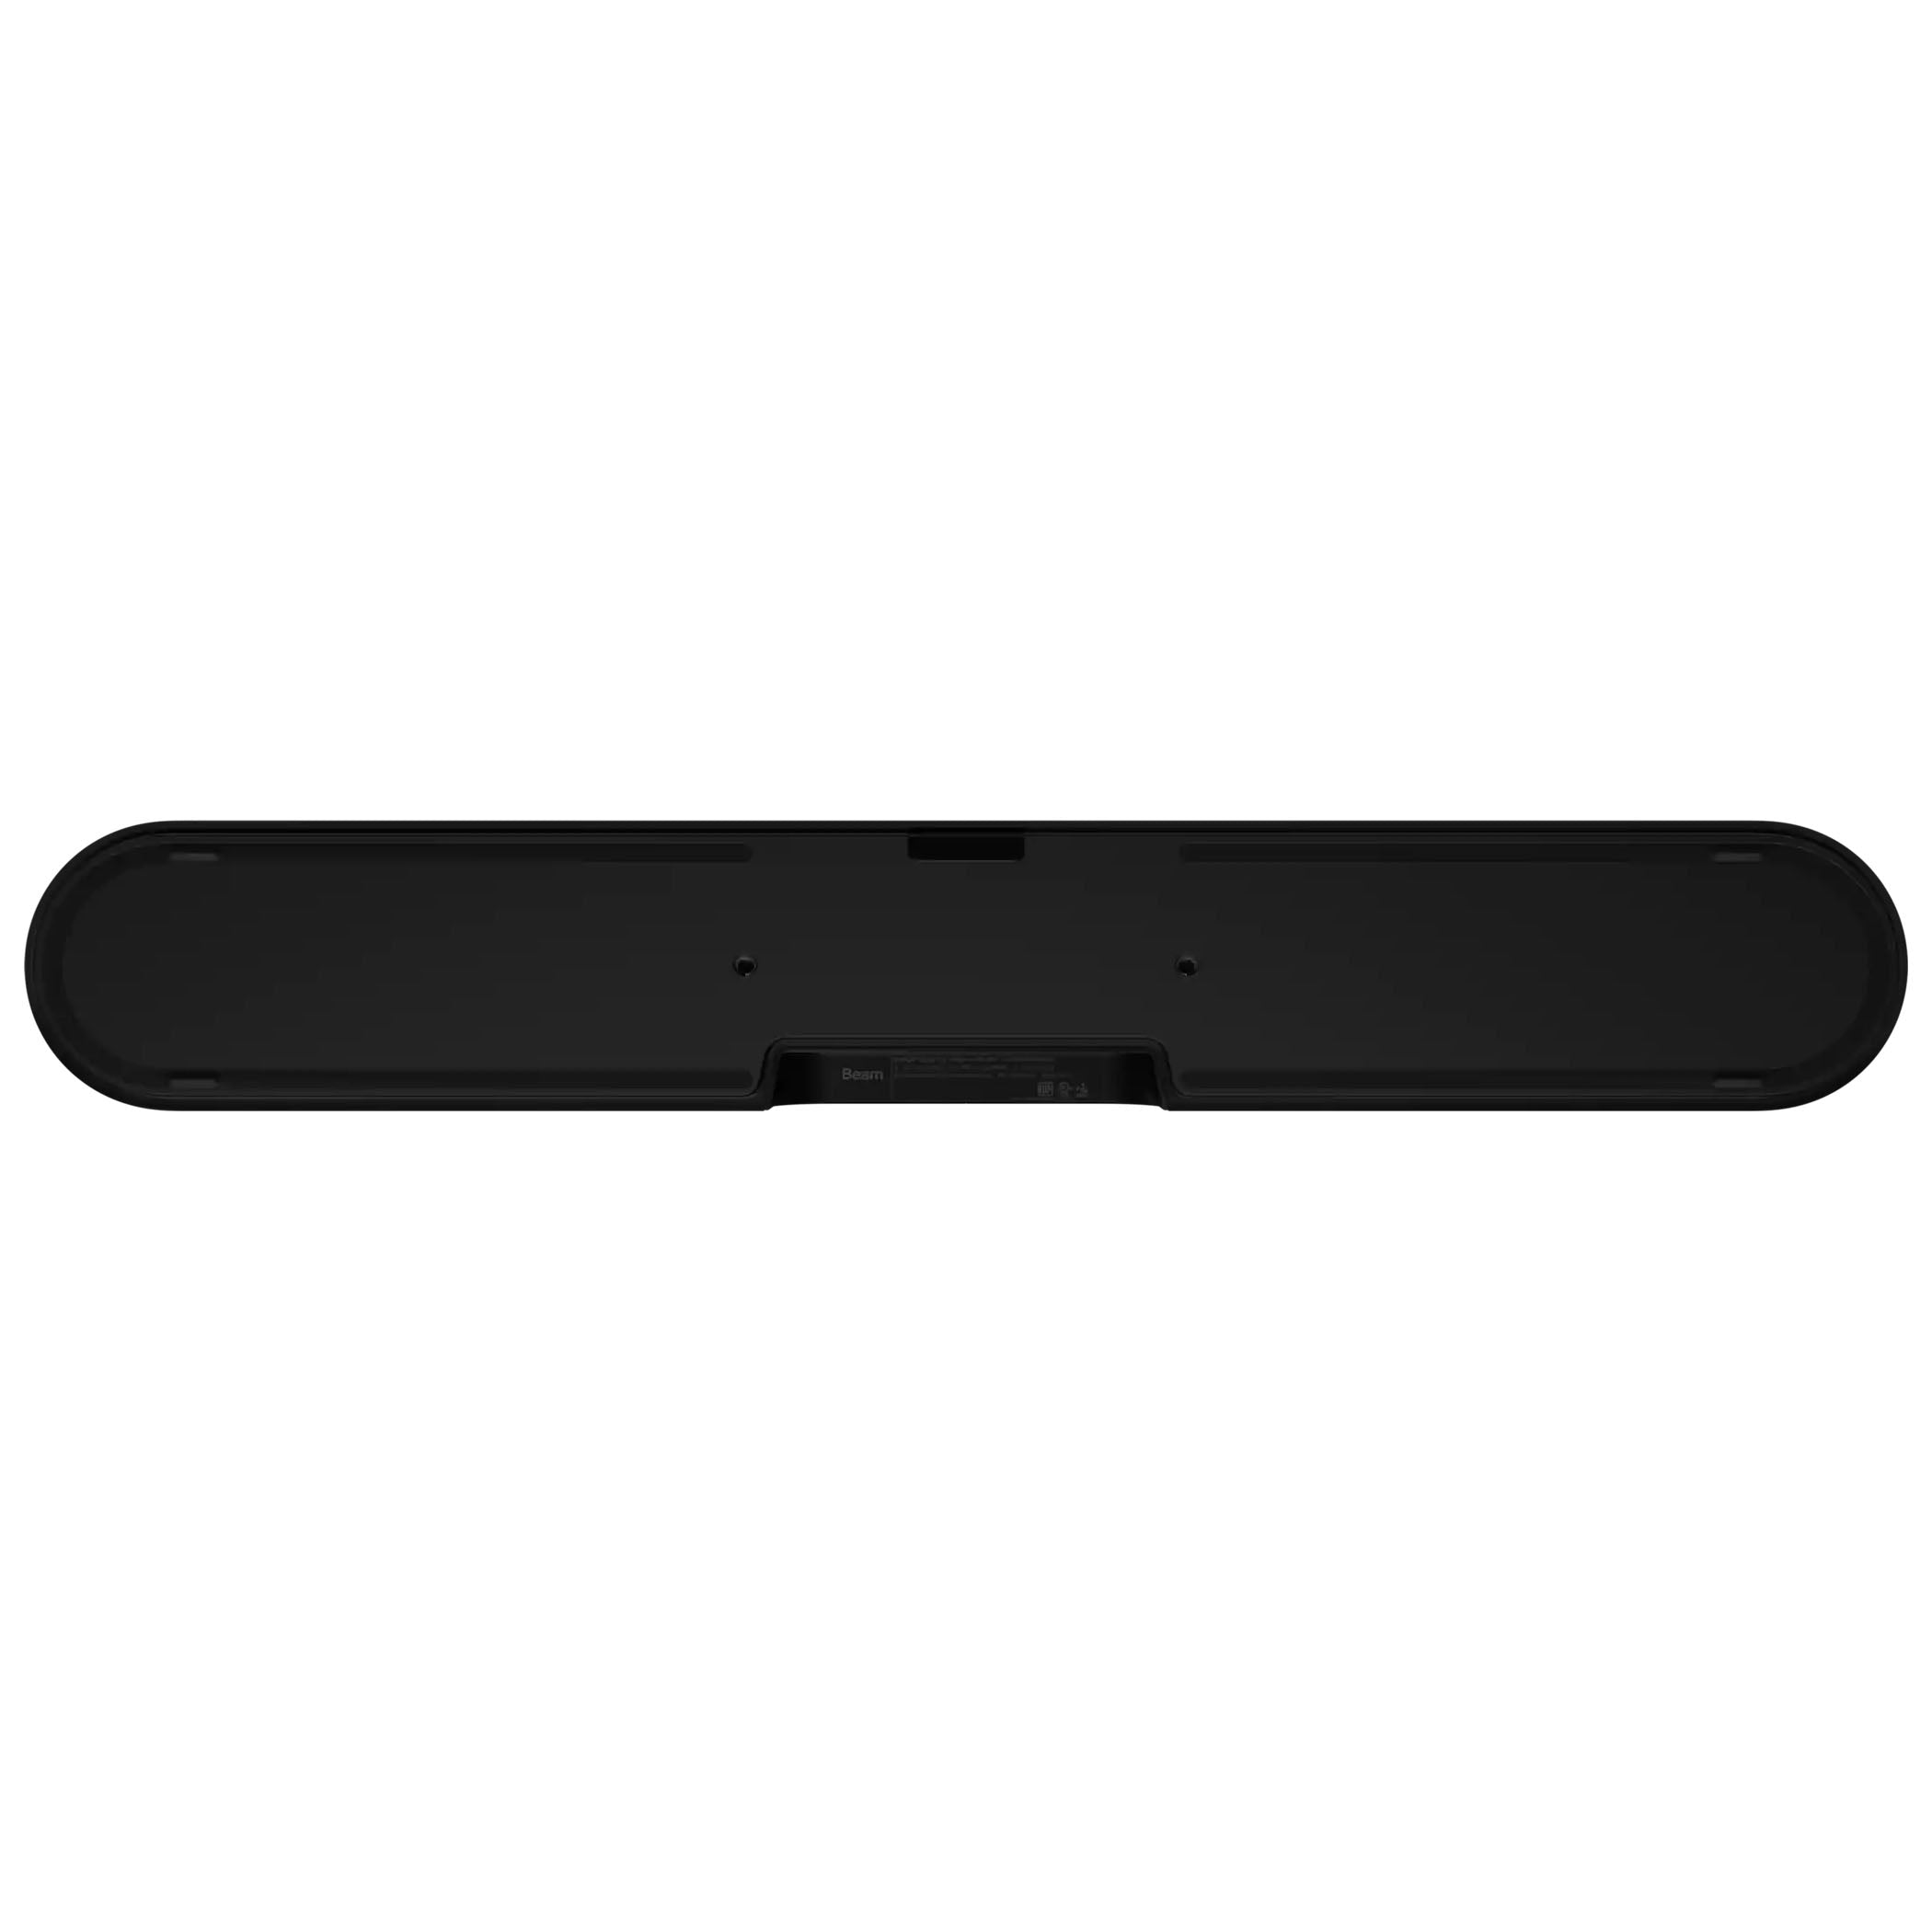 Sonos Beam - The Smart Soundbar for Your TV